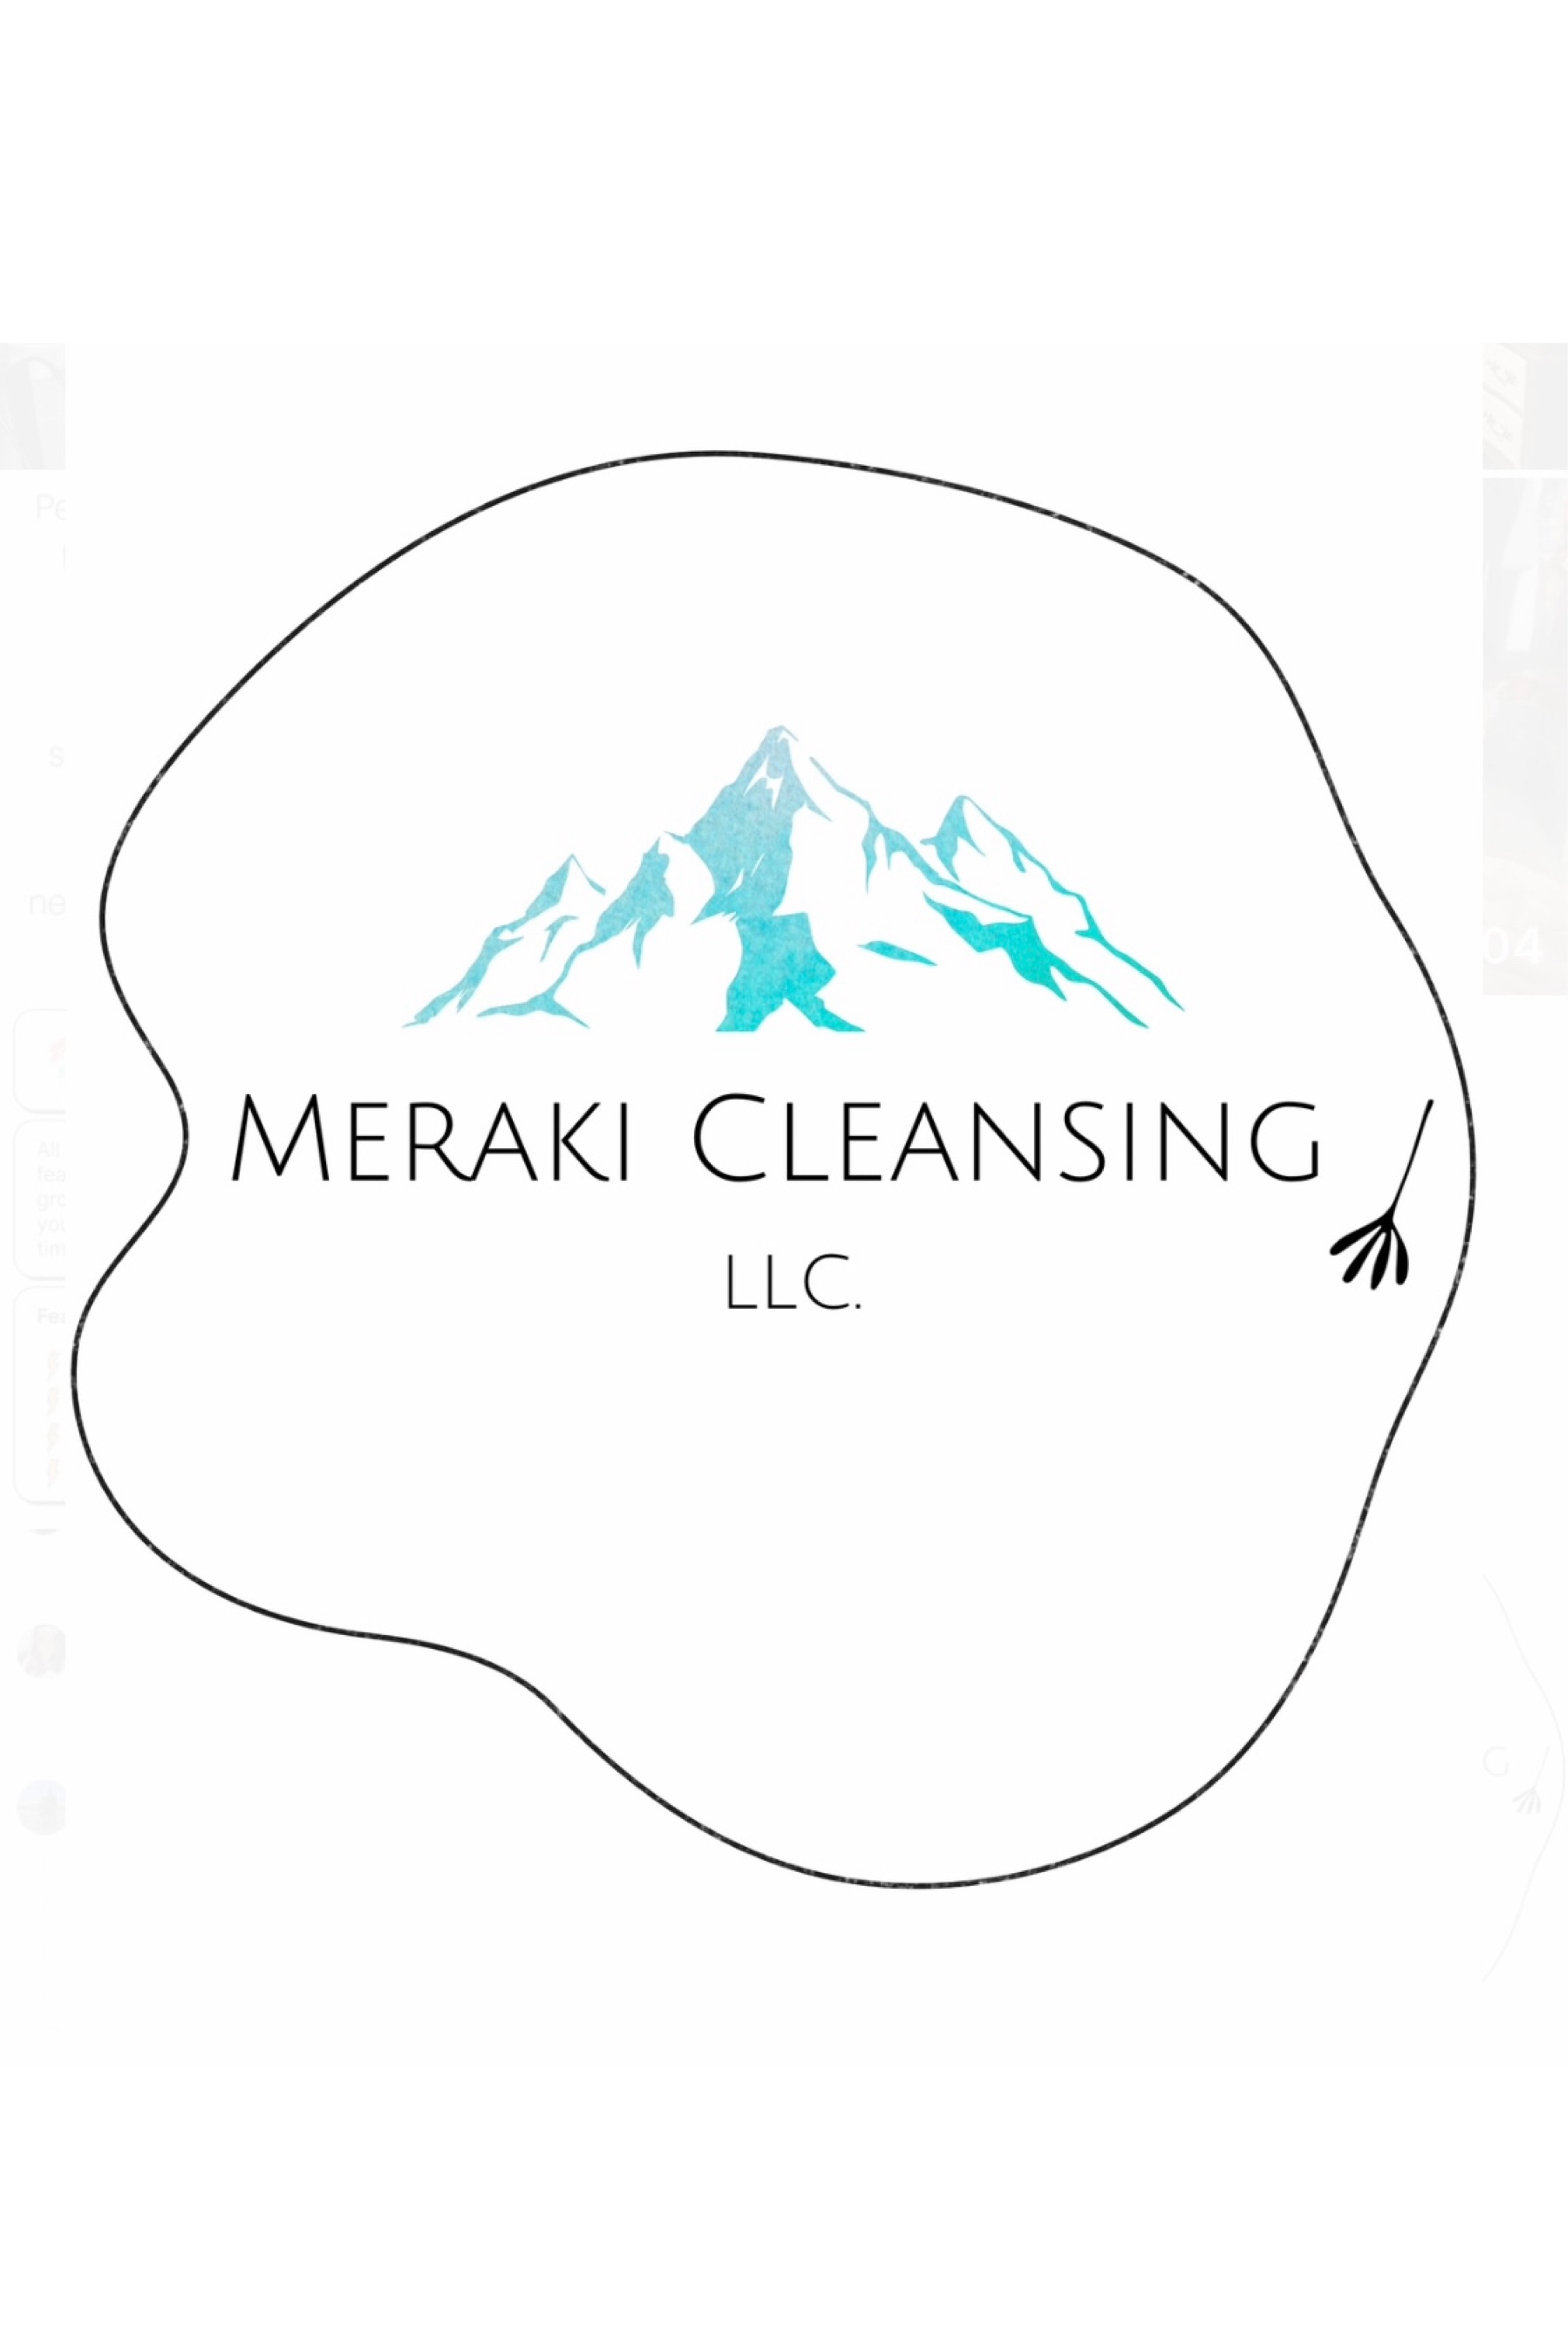 Meraki Cleansing - Unlicensed Contractor Logo